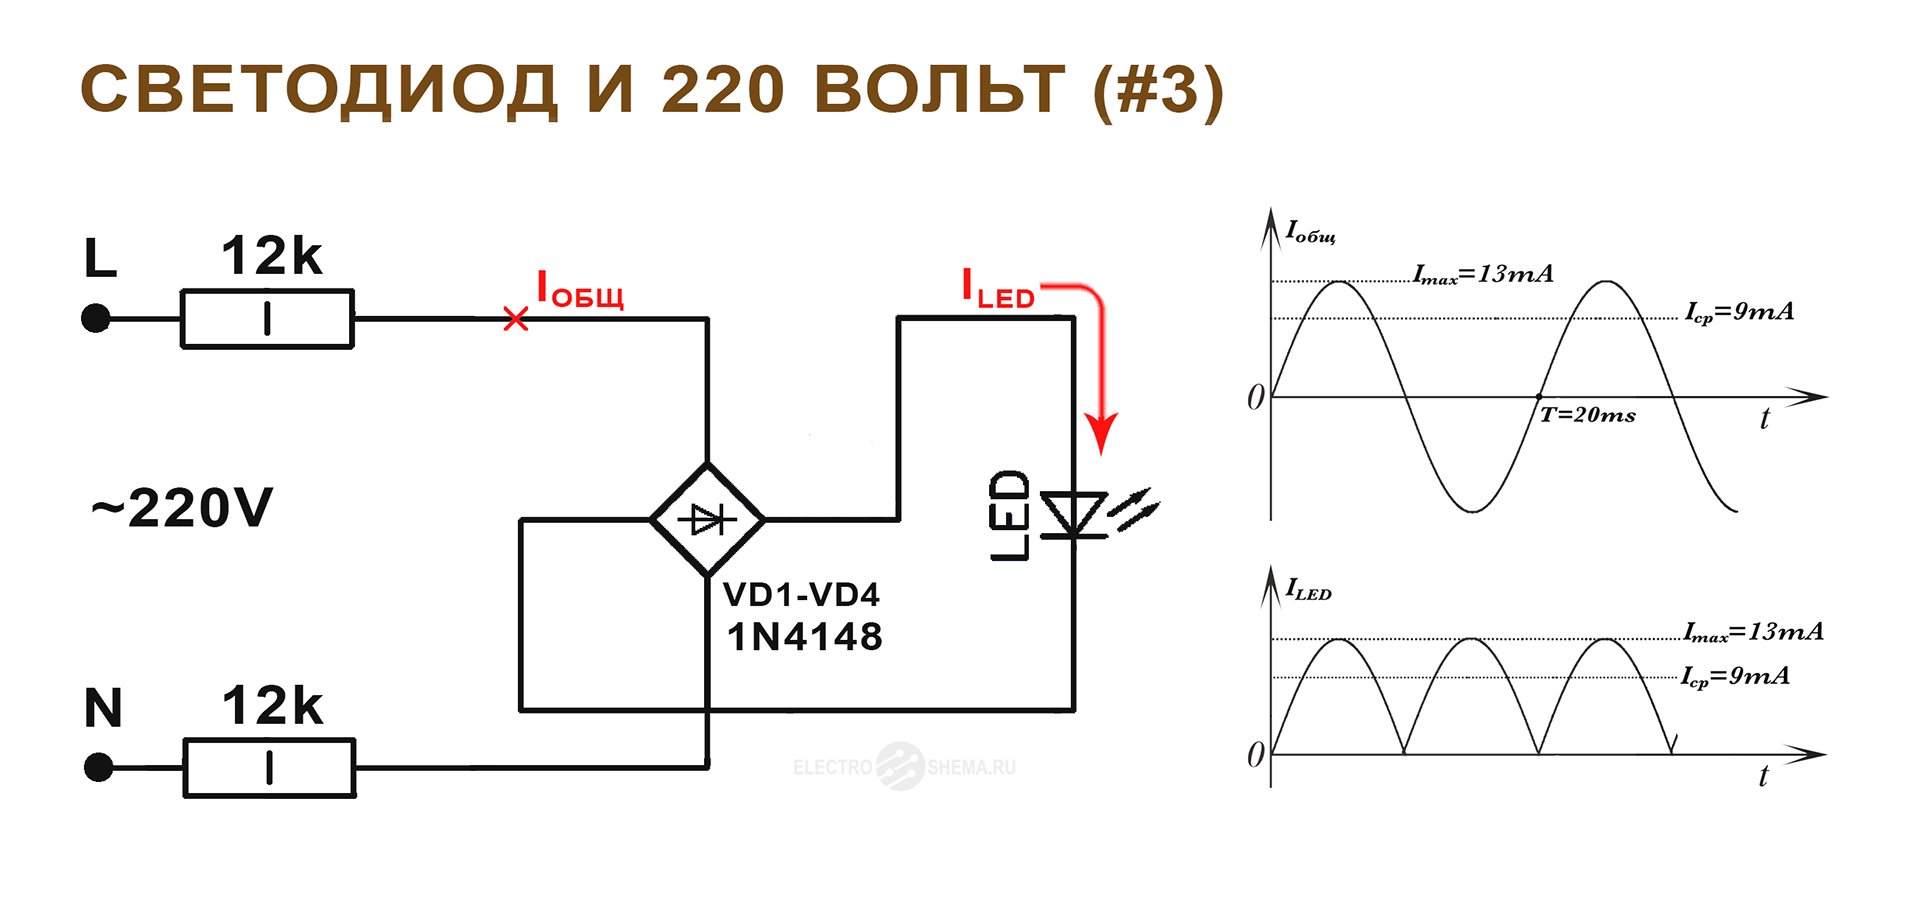 K диод. Схема подключения диодного моста на 220 вольт. Схема подключения диода от 12 вольт. Схема подключения светодиодов 3 вольт. Схема подключения светодиода через резистор.